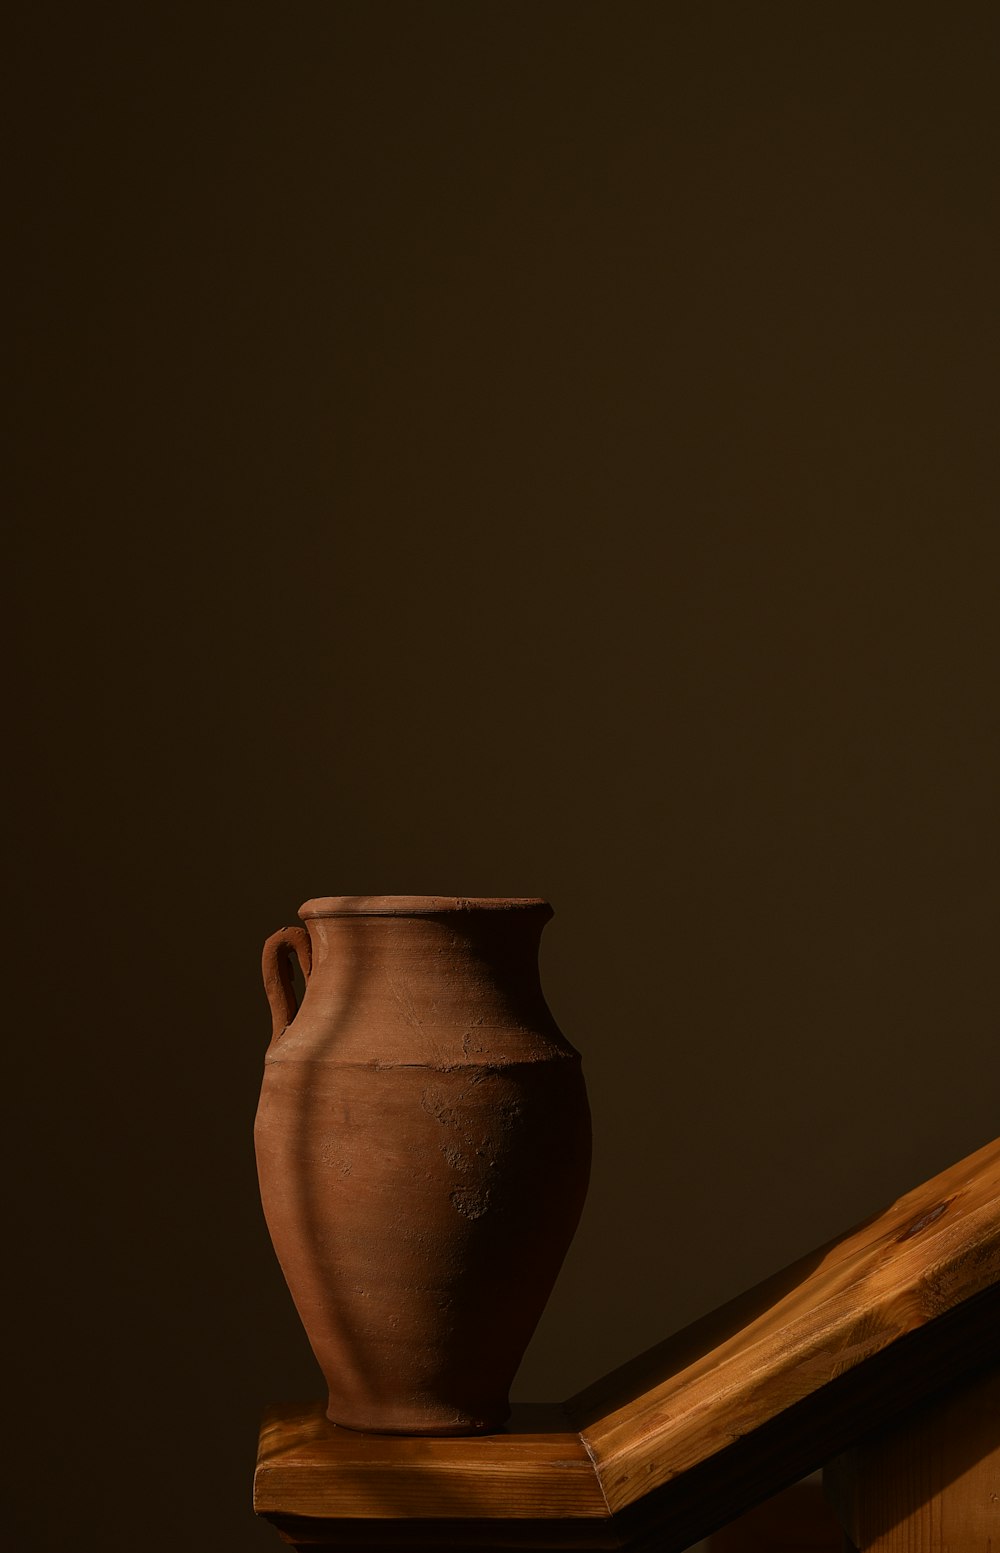 Vase en céramique marron sur table en bois marron